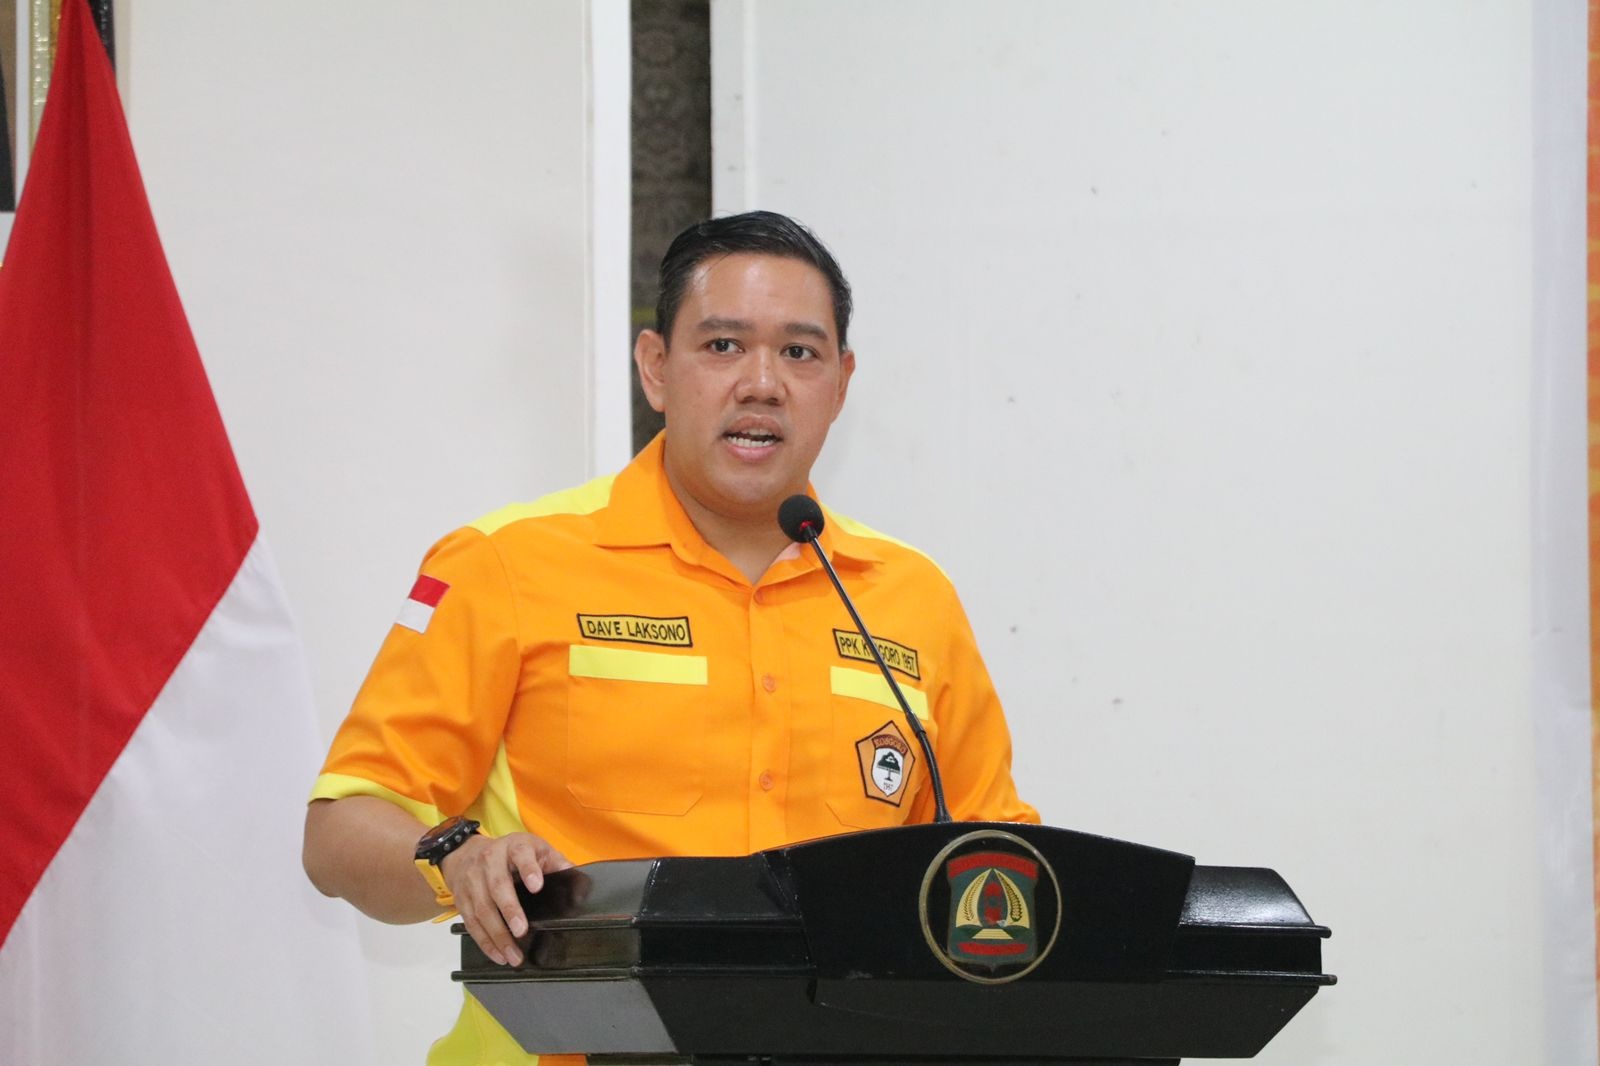 Anggota Komisi I dari Partai Golkra Dave Laksono berpidato di mimbar dengan baju berwarna oranye, seragam ormas Kosgoro 57